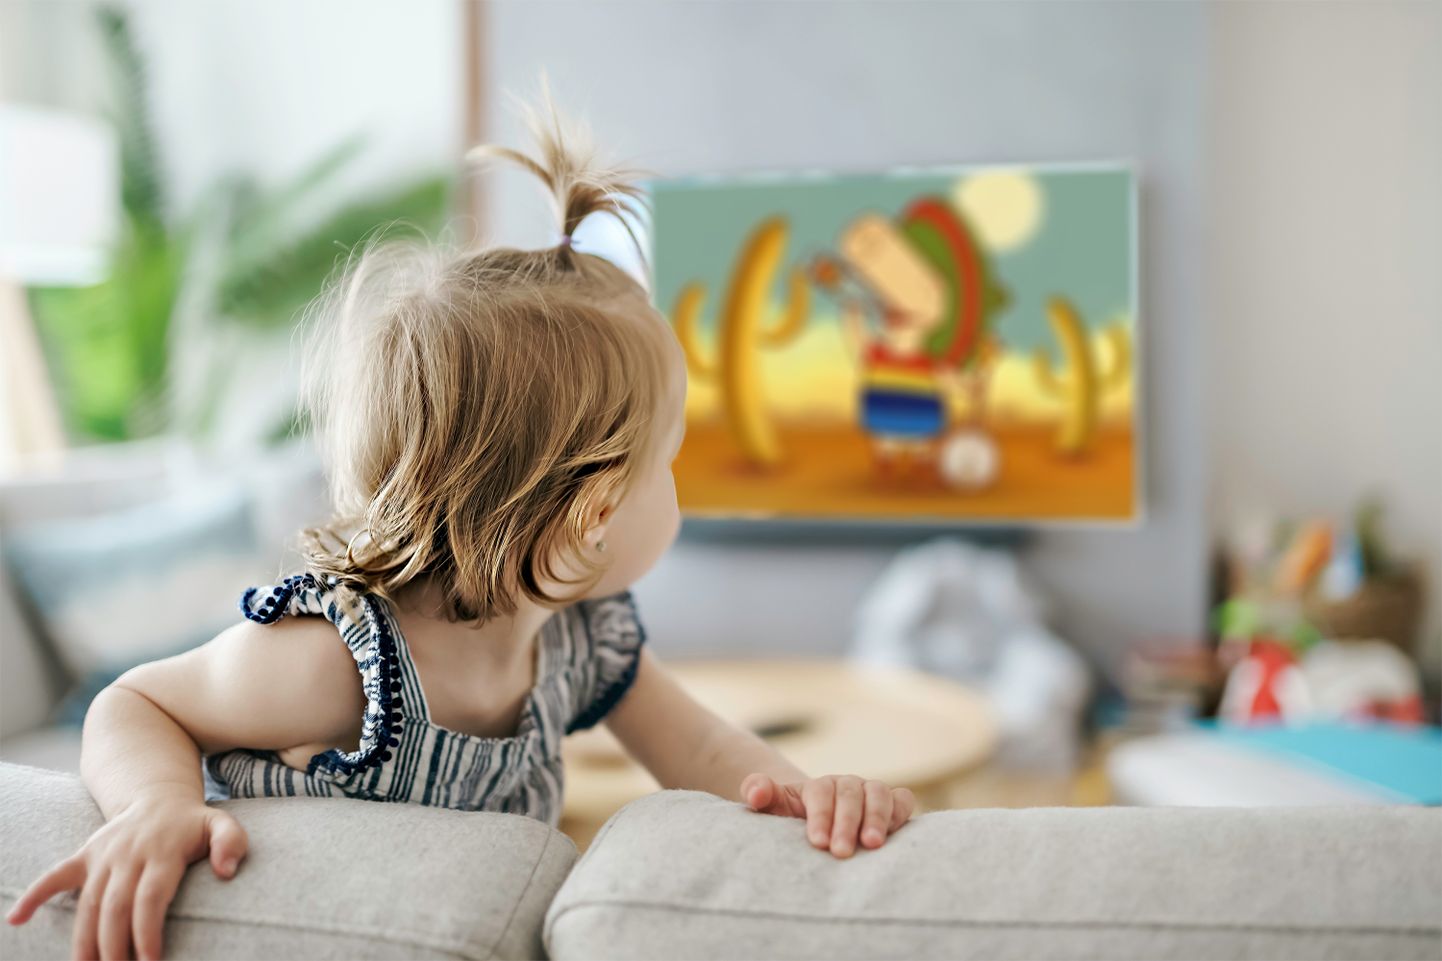 Laps vaatab telekast limonaadireklaami.